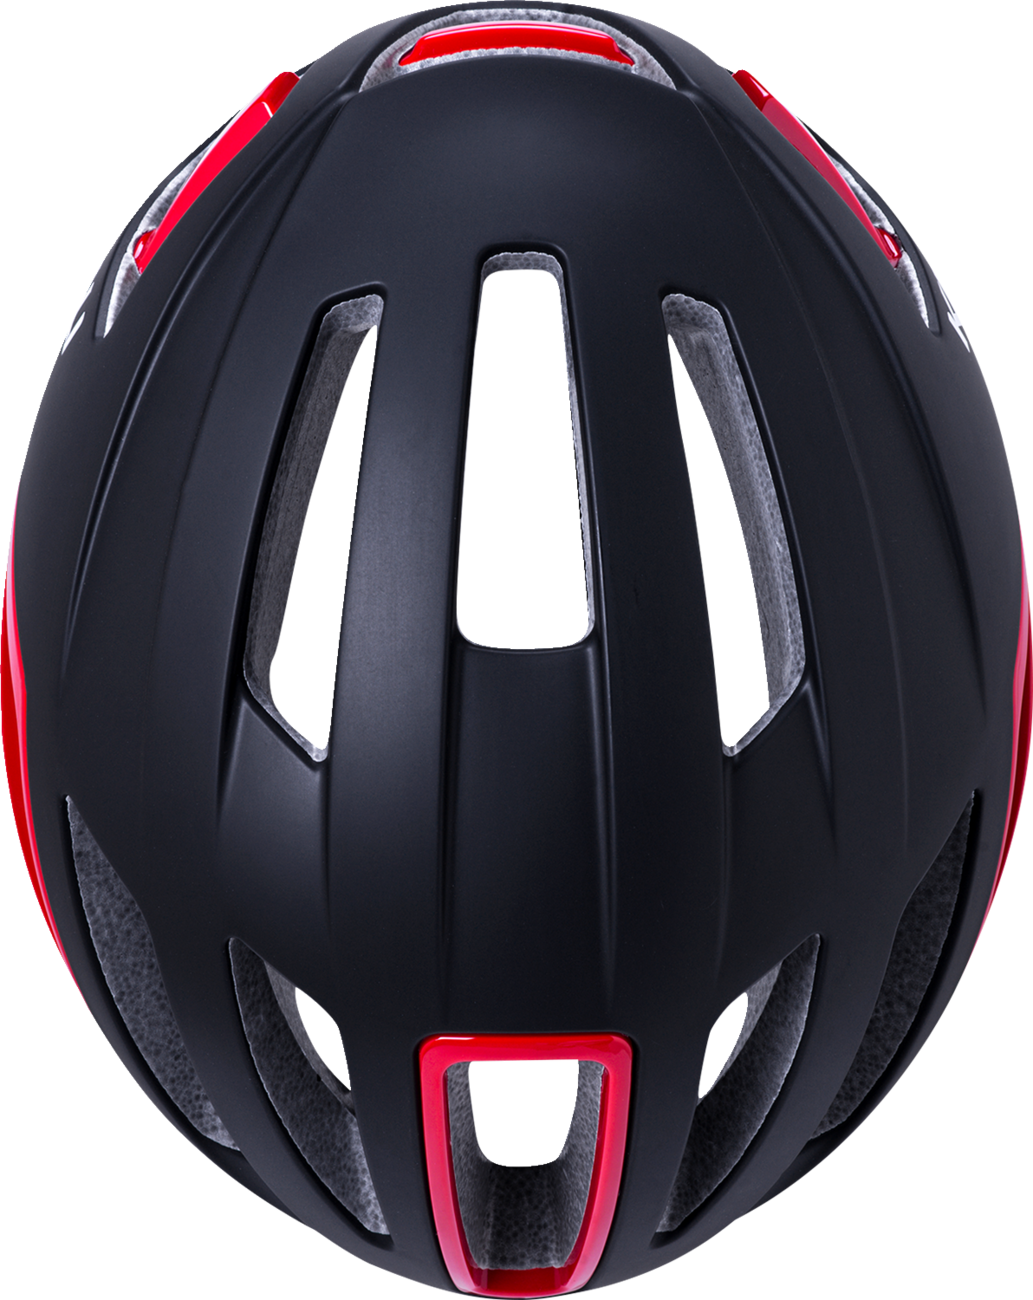 KALI Uno Helmet - Matte Black/Red - S/M 0240921126